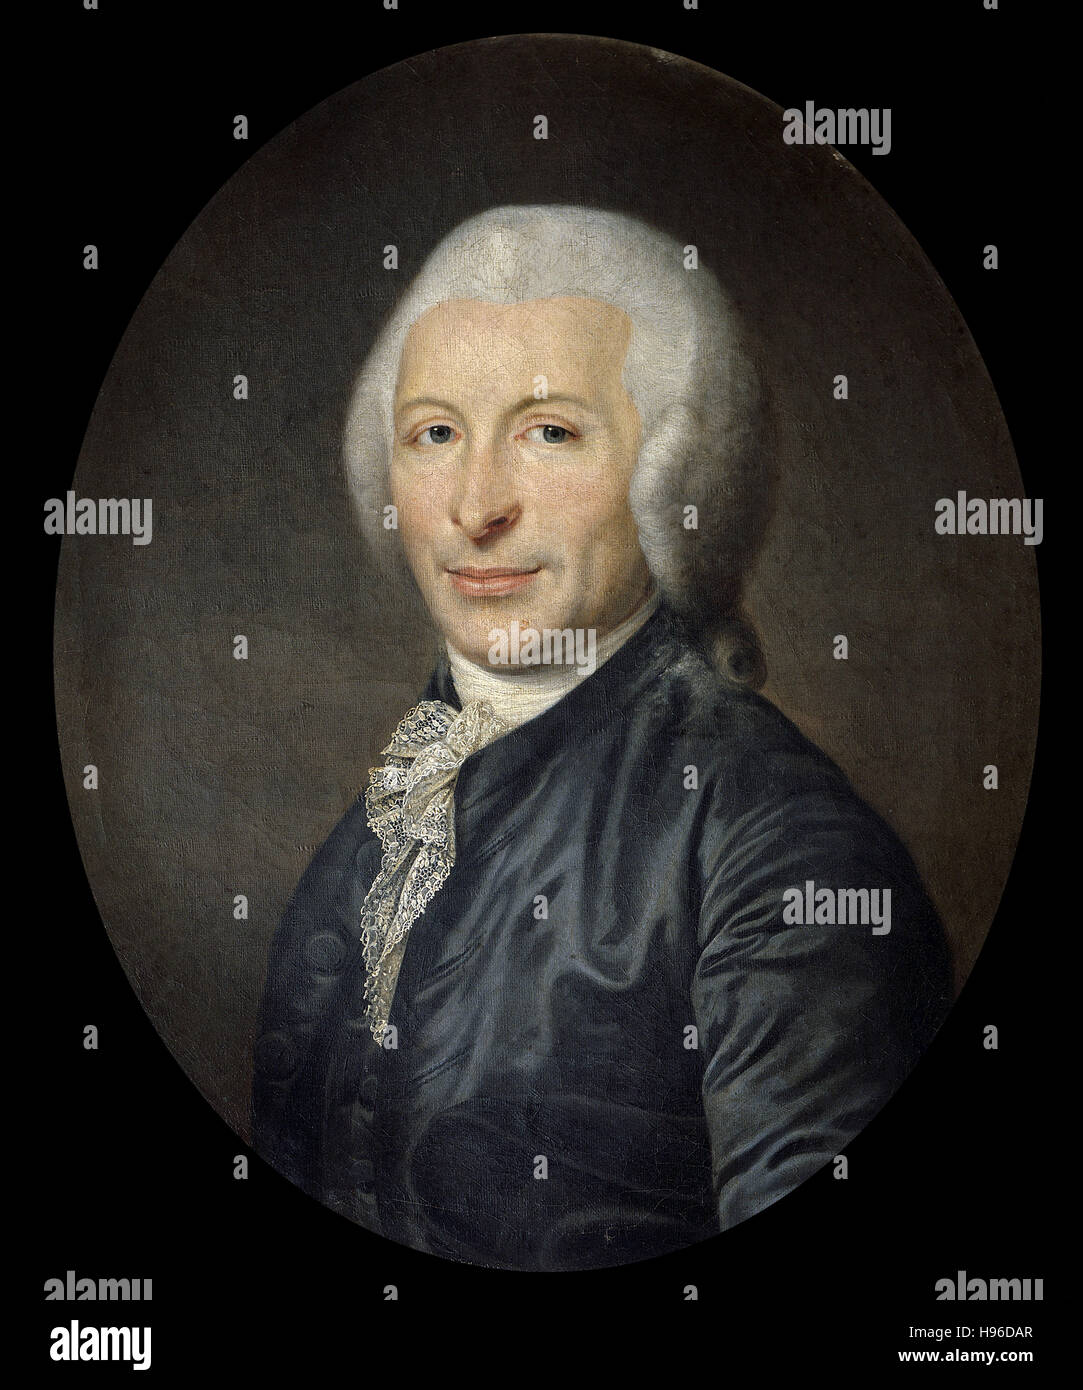 Anonyme, xviiie siècle Portrait de médecin et homme politique Joseph Ignace Guillotin - Banque D'Images